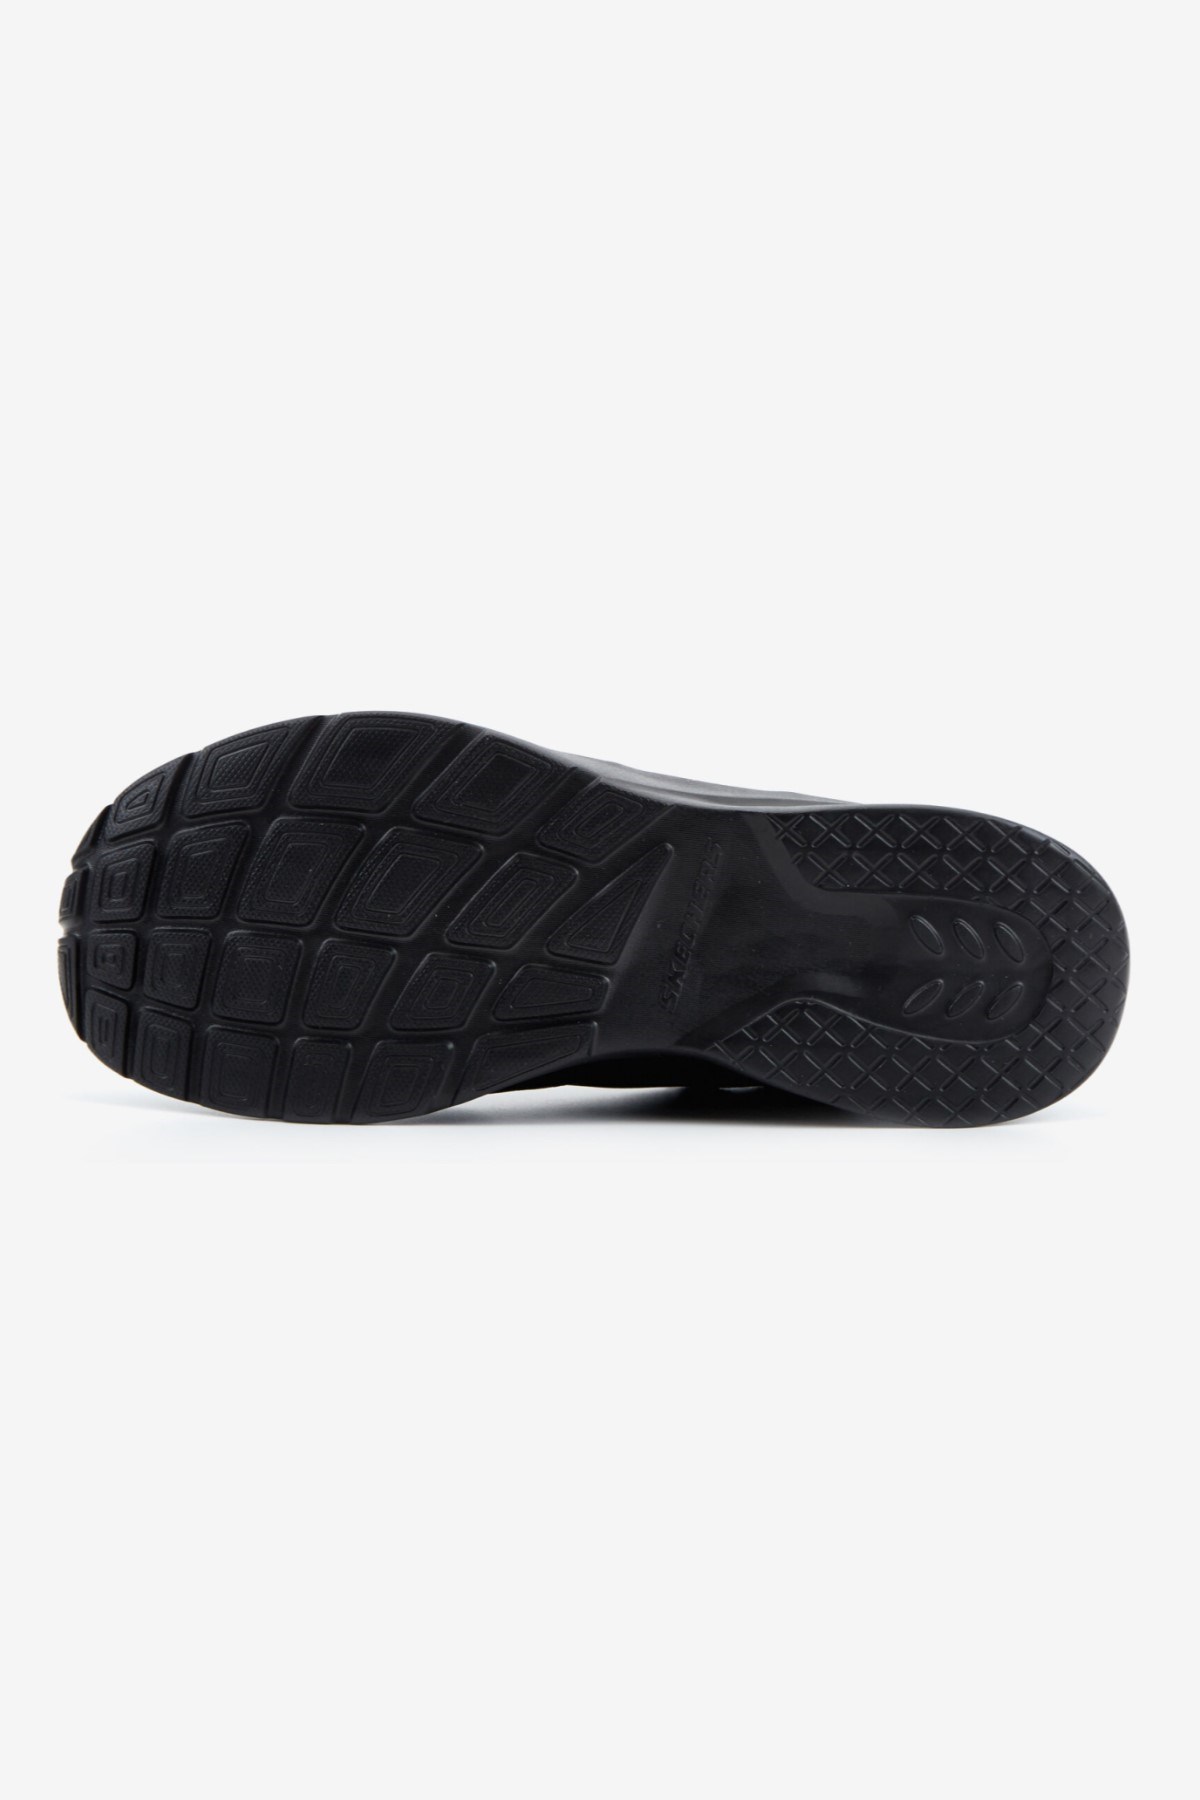 Skechers Kadın Ayakkabı S58363 Siyah